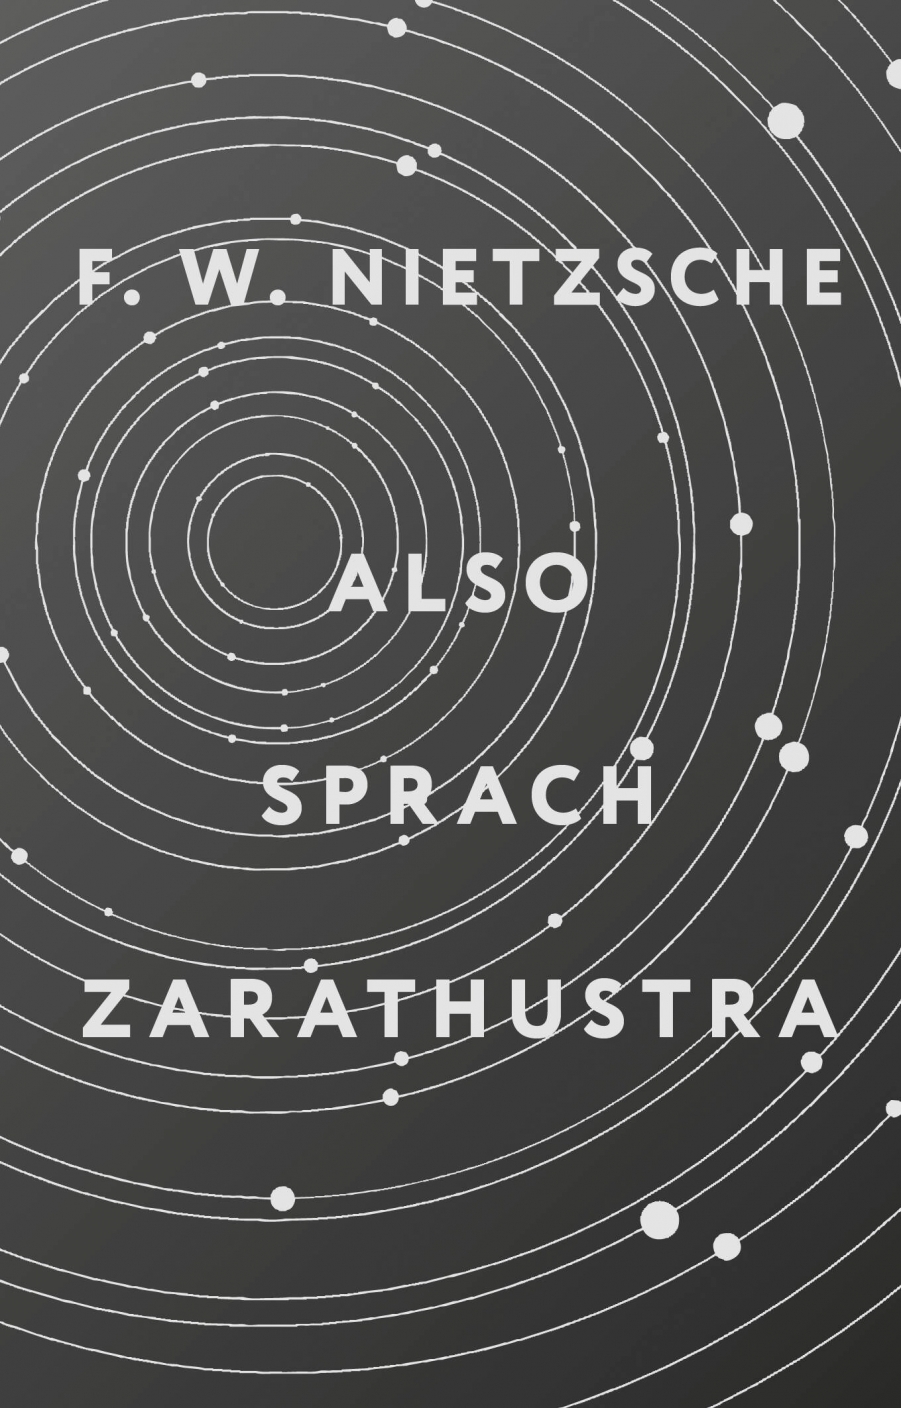 Nietzsche F. W. Also sprach Zarathustra 